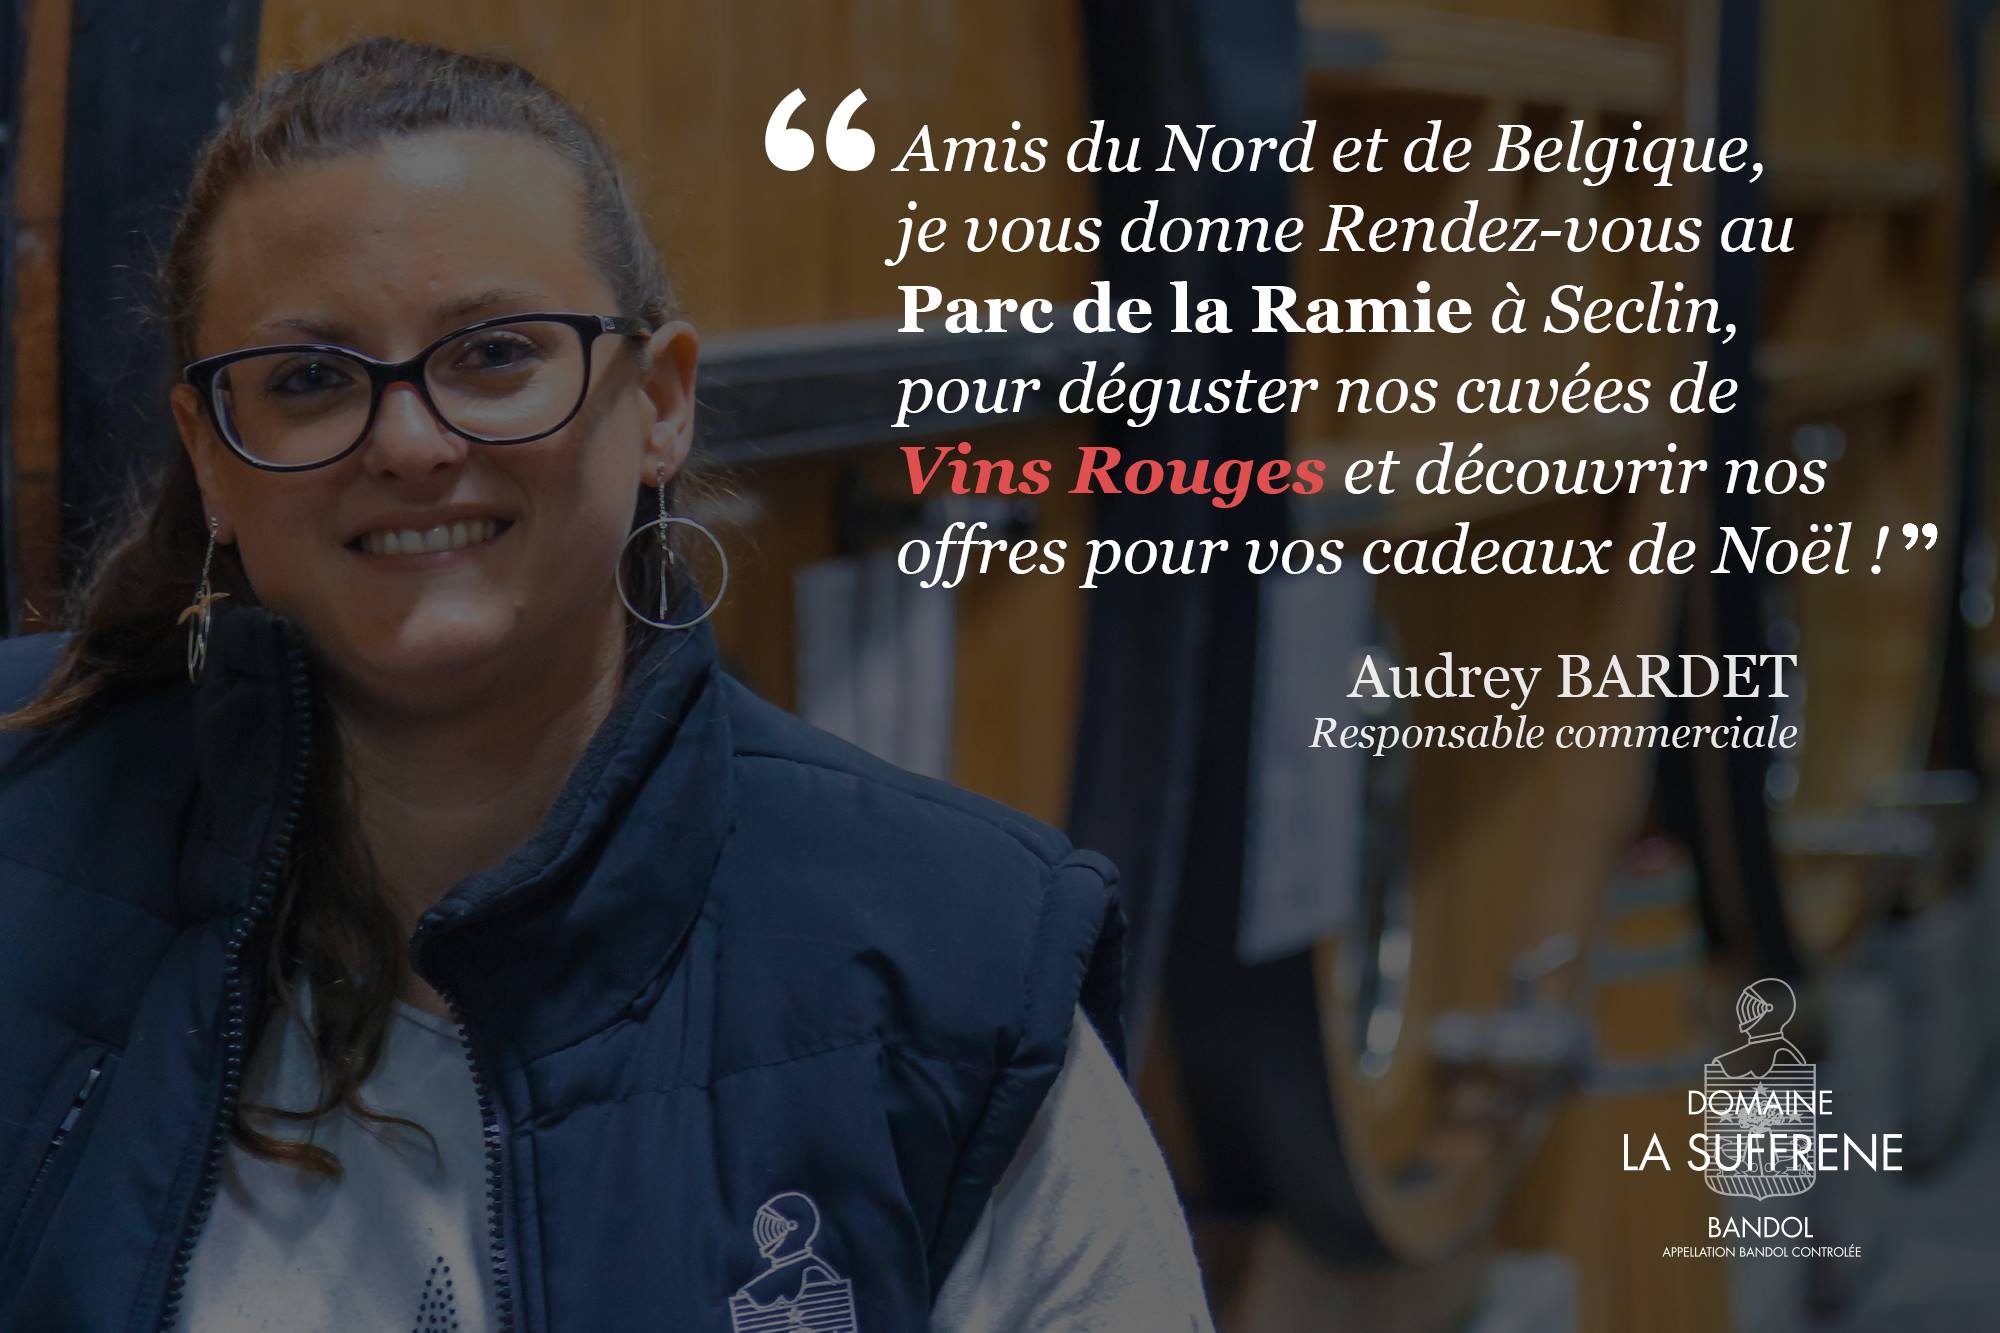 Audrey Bardet - Responsable commerciale au Domaine la Suffrène